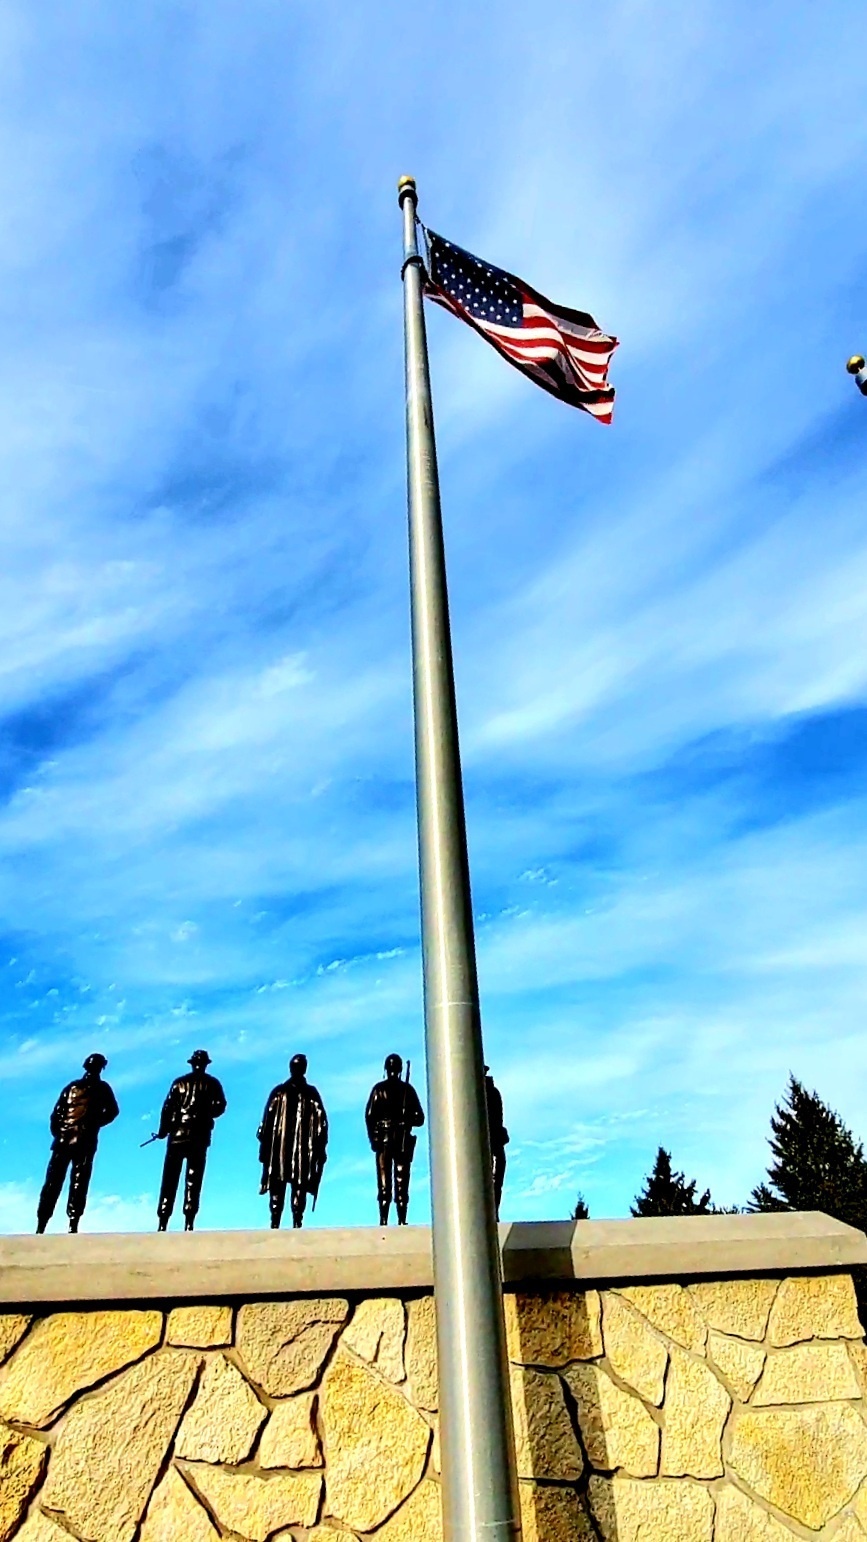 Flags at Fort McCoy's Veterans Memorial Plaza